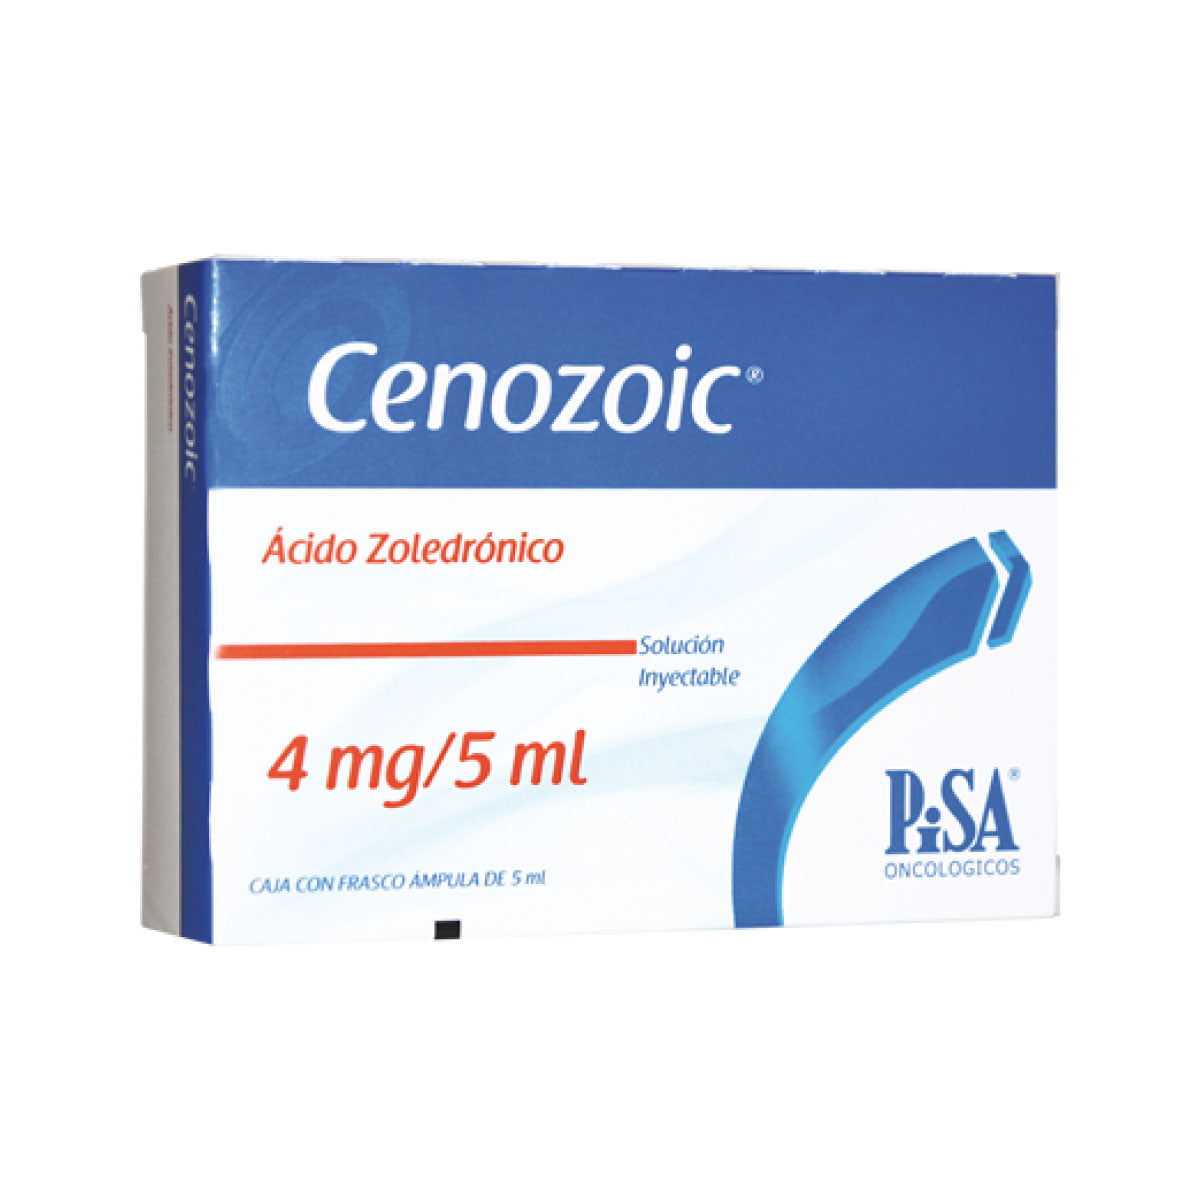 Cenozoic (Ácido Zoledrónico) 4mg/5ml